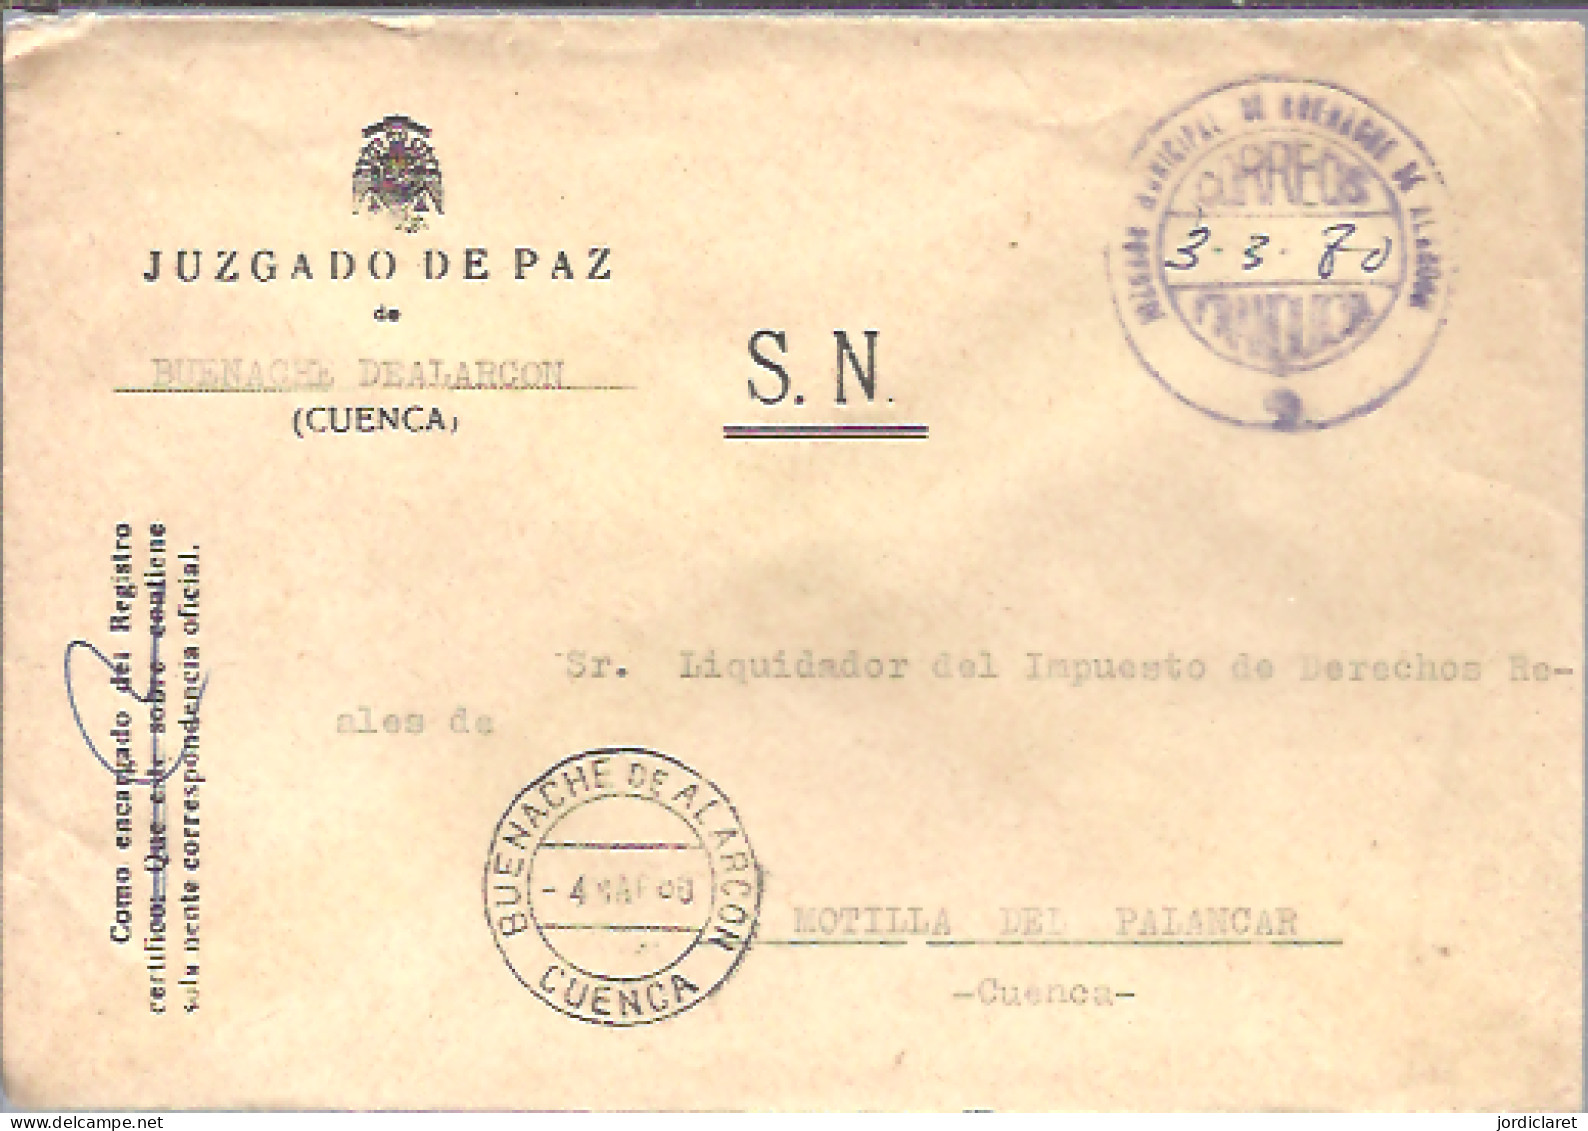 JUZGADO DE PAZ BUENACHE DEALARCON CUENCA 1980 - Franchise Postale